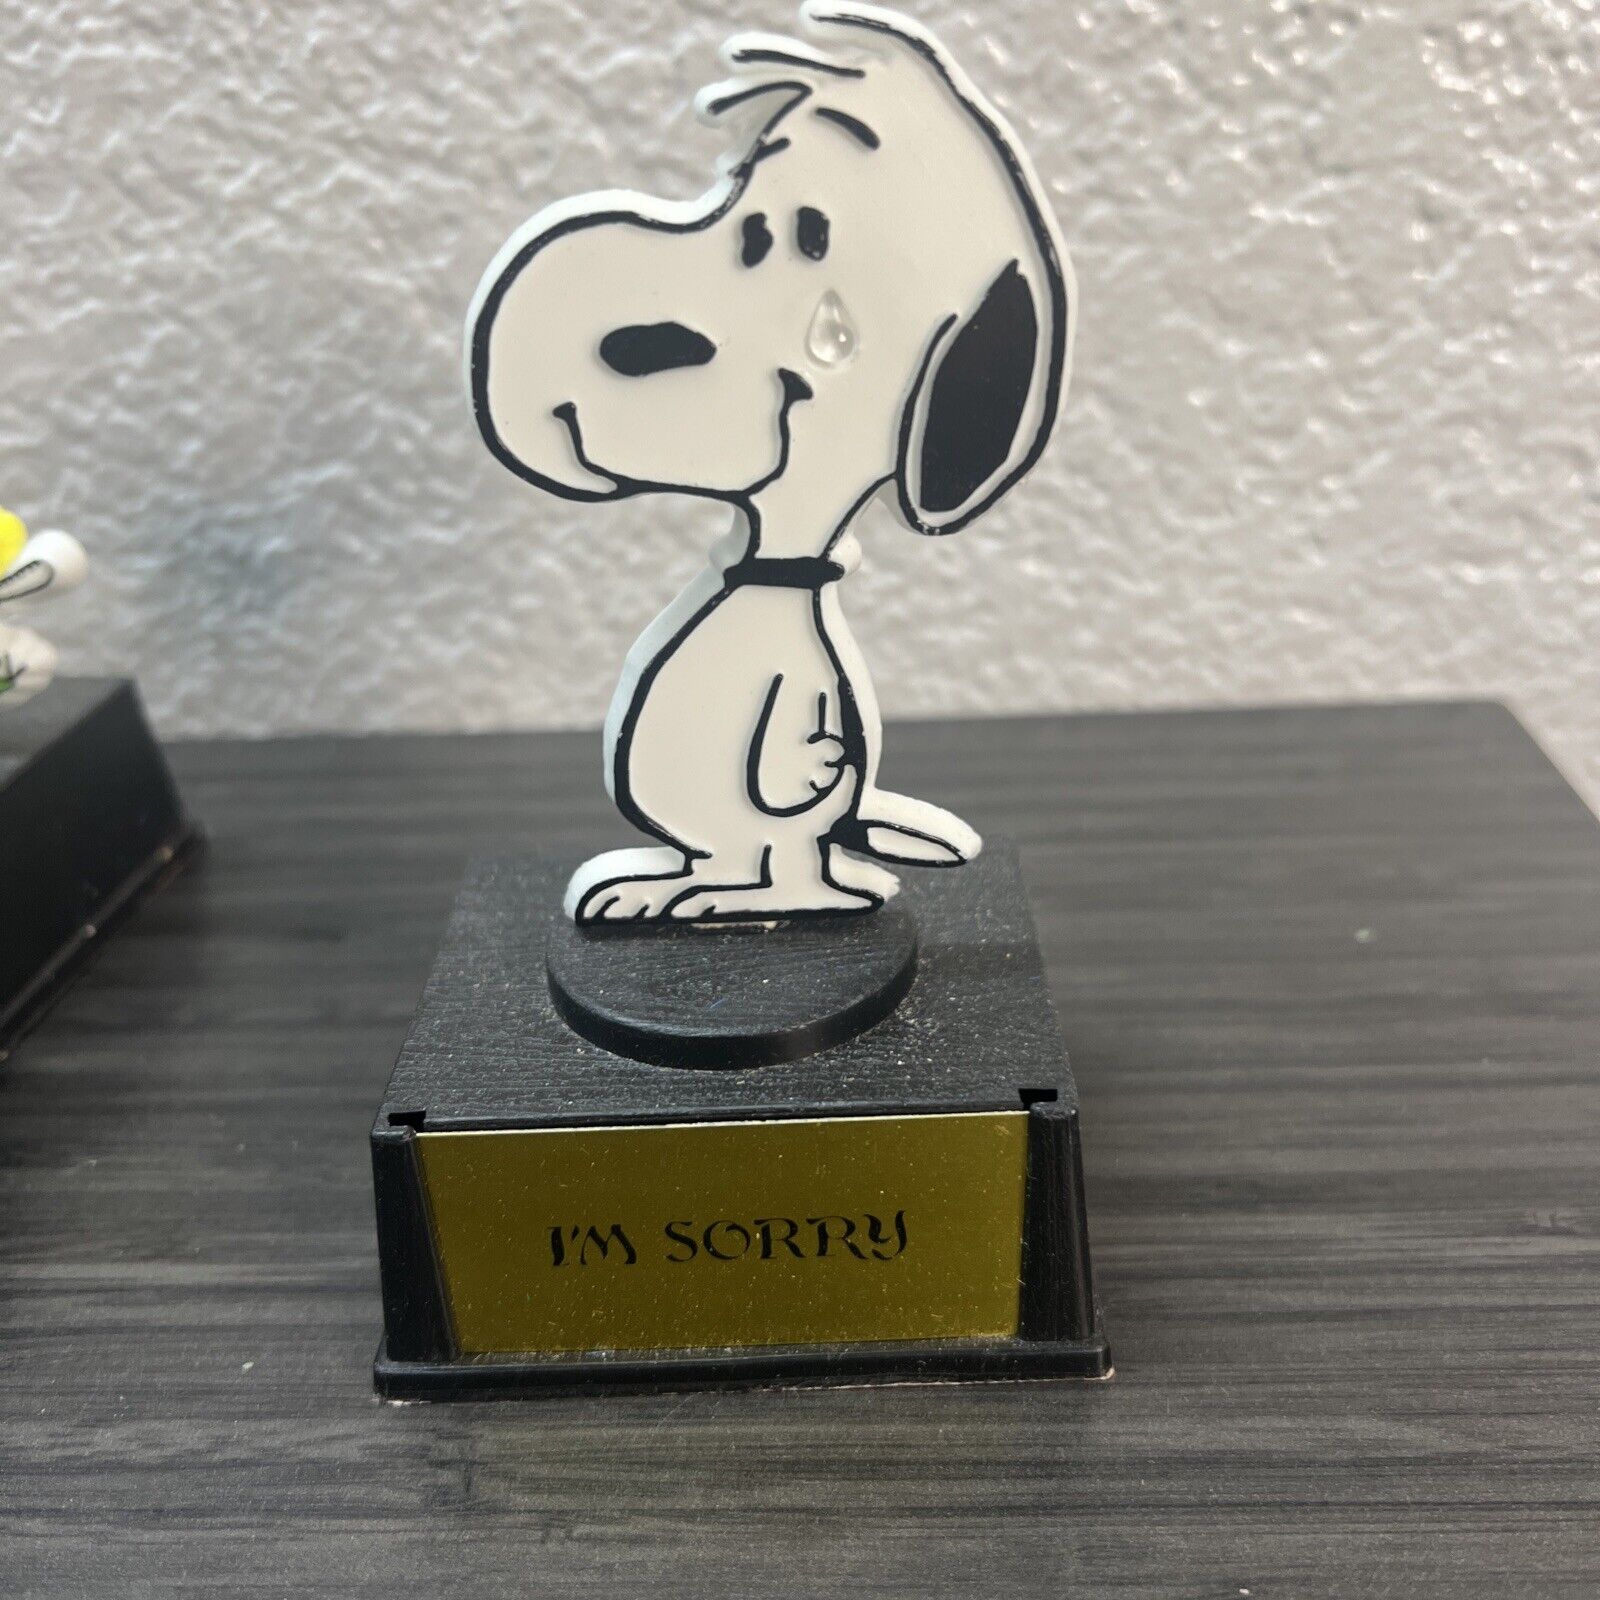 Vintage Aviva Peanuts Snoopy Trophy Figurine - I’m Sorry